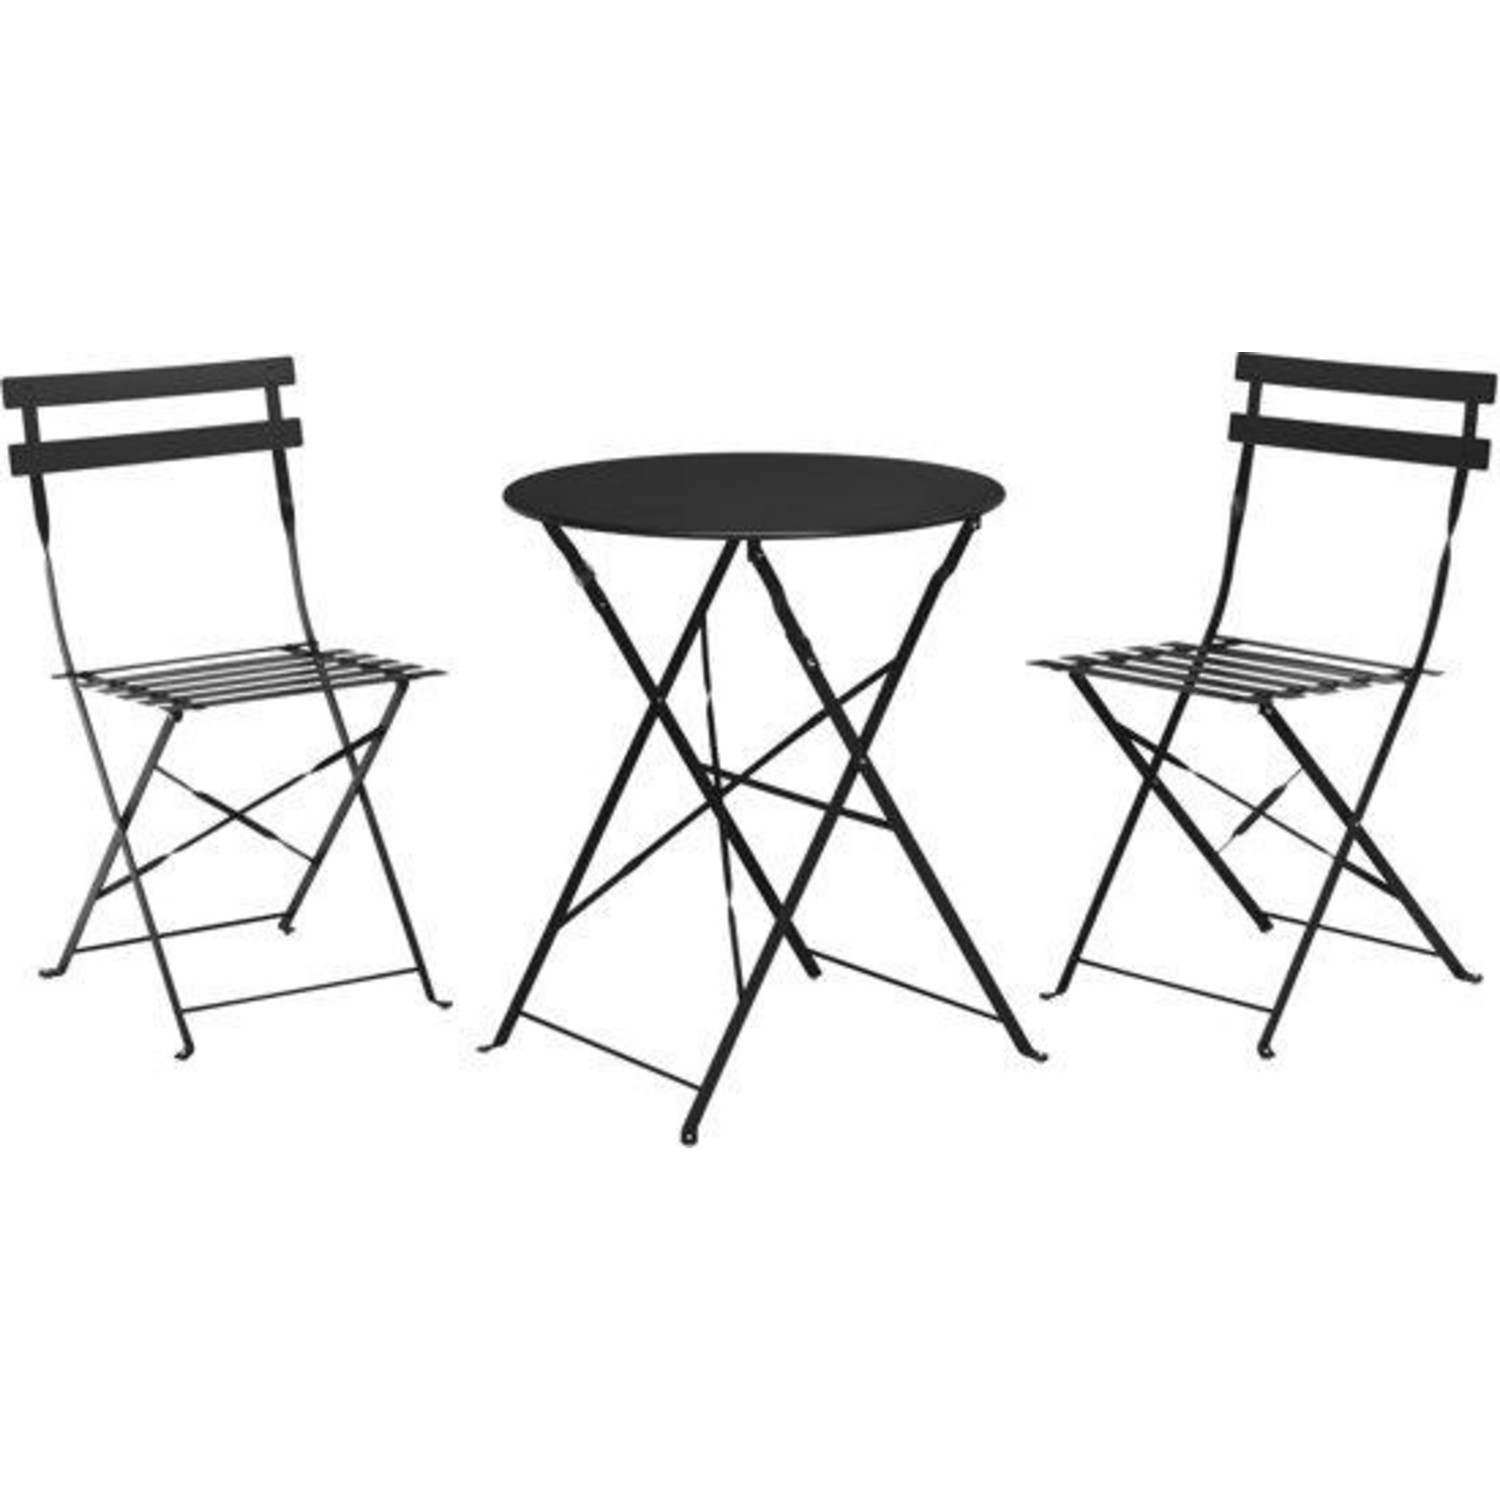 Korst aanbidden Pamflet Bistro set zwart 3 stuks - terras meubel - tuin meubel - 2 stoelen 1 tafel  - opklapbaar - Relaxwonen